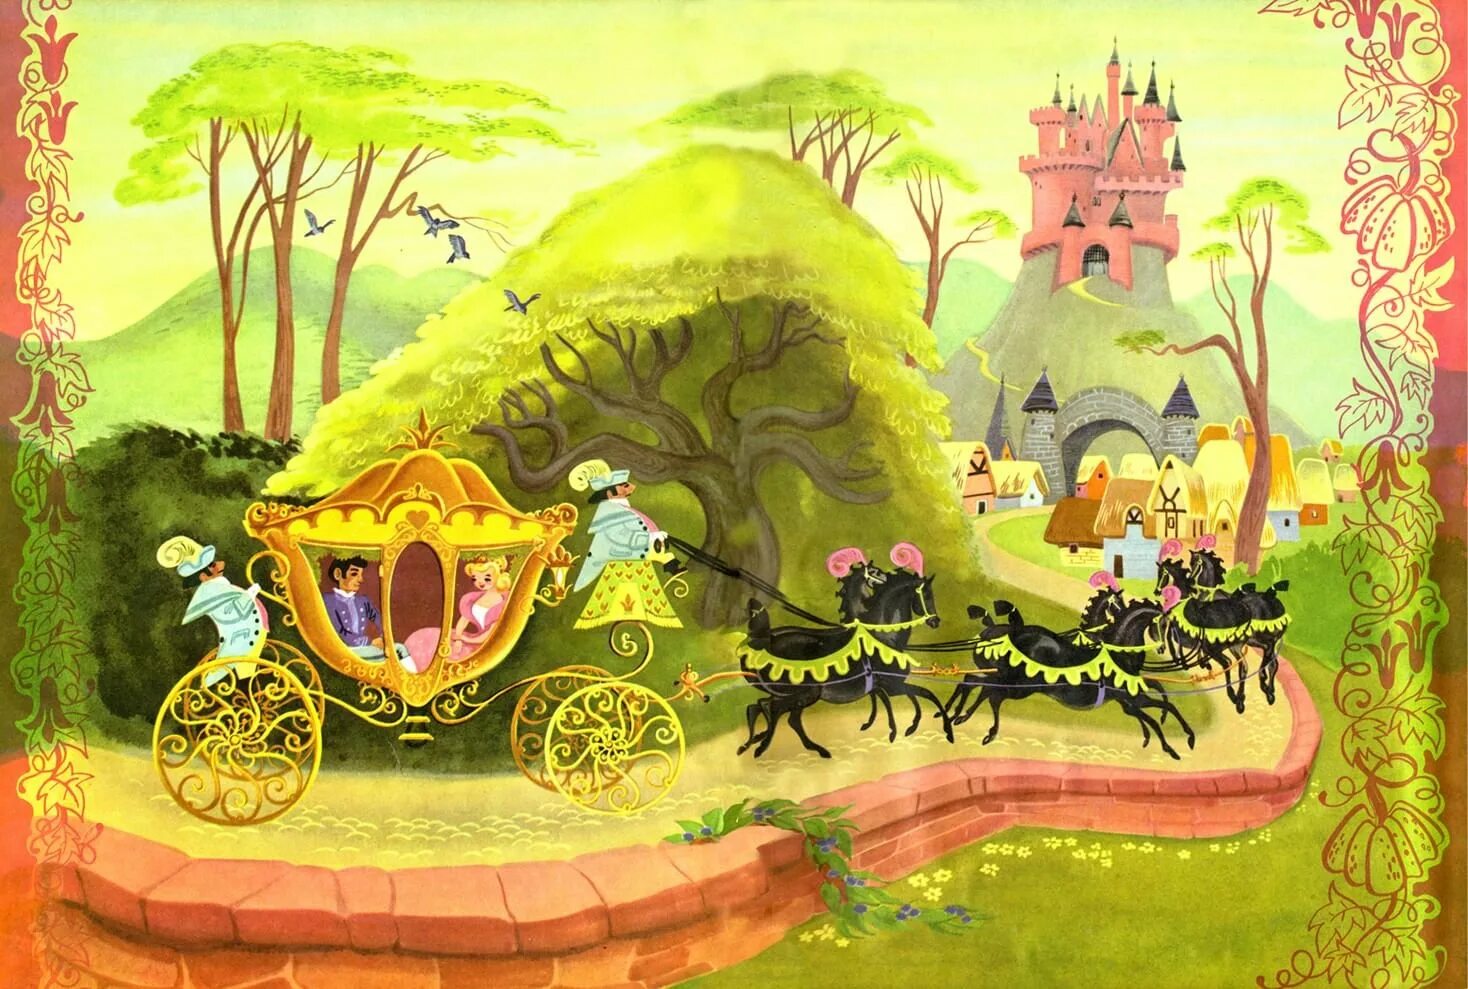 Сказочный мир Шарля Перро. Иллюстрации к сказкам Шарля Перро. Волшебный мир приключений